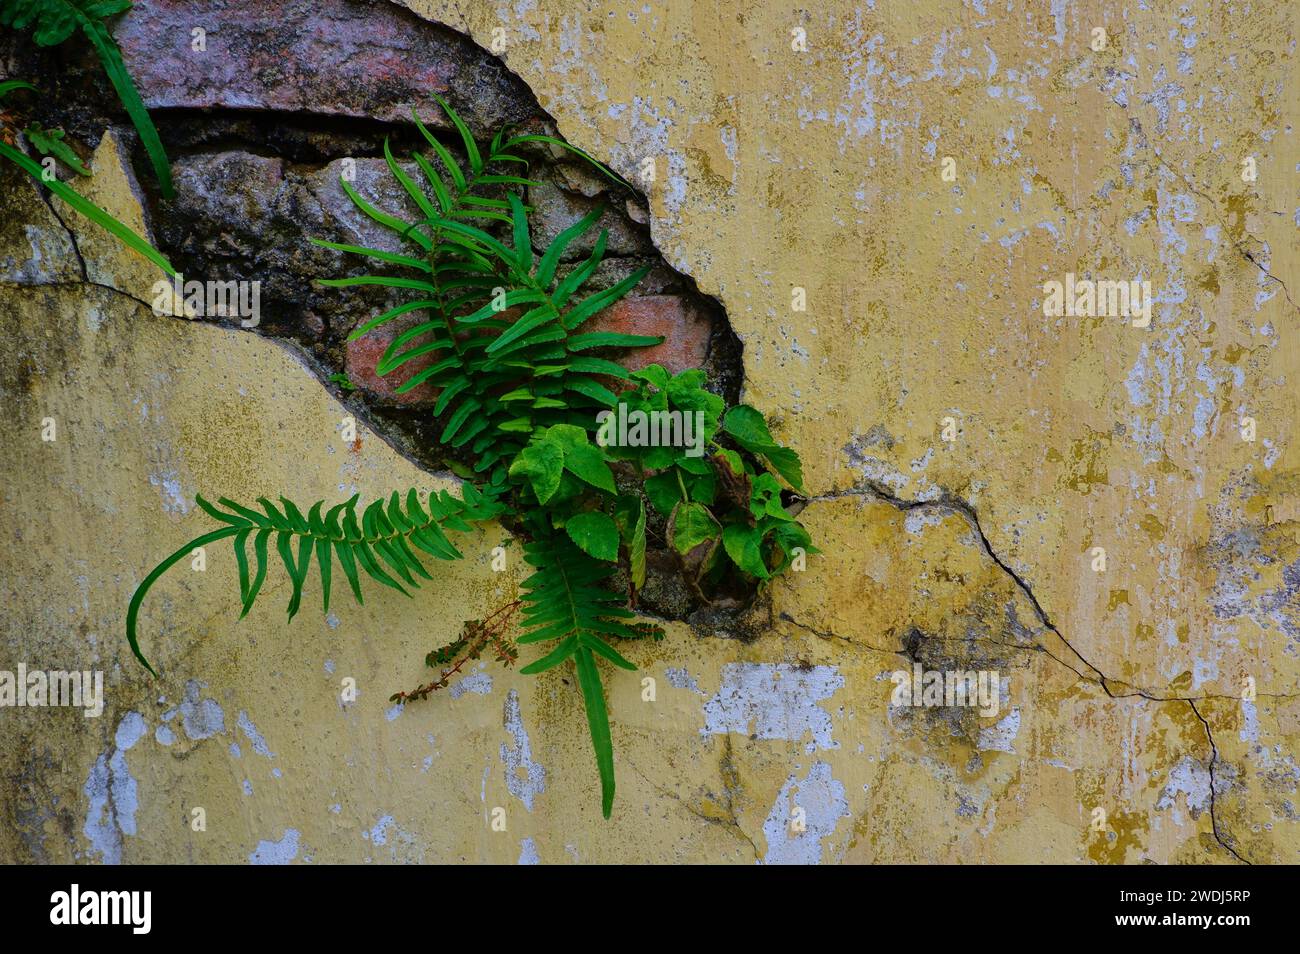 Der Triumph der Natur: Lebendige grüne Pflanzen brechen durch eine alte gelbe Ziegelmauer und schaffen Harmonie zwischen urbanem Verfall und botanischem Charme. Stockfoto